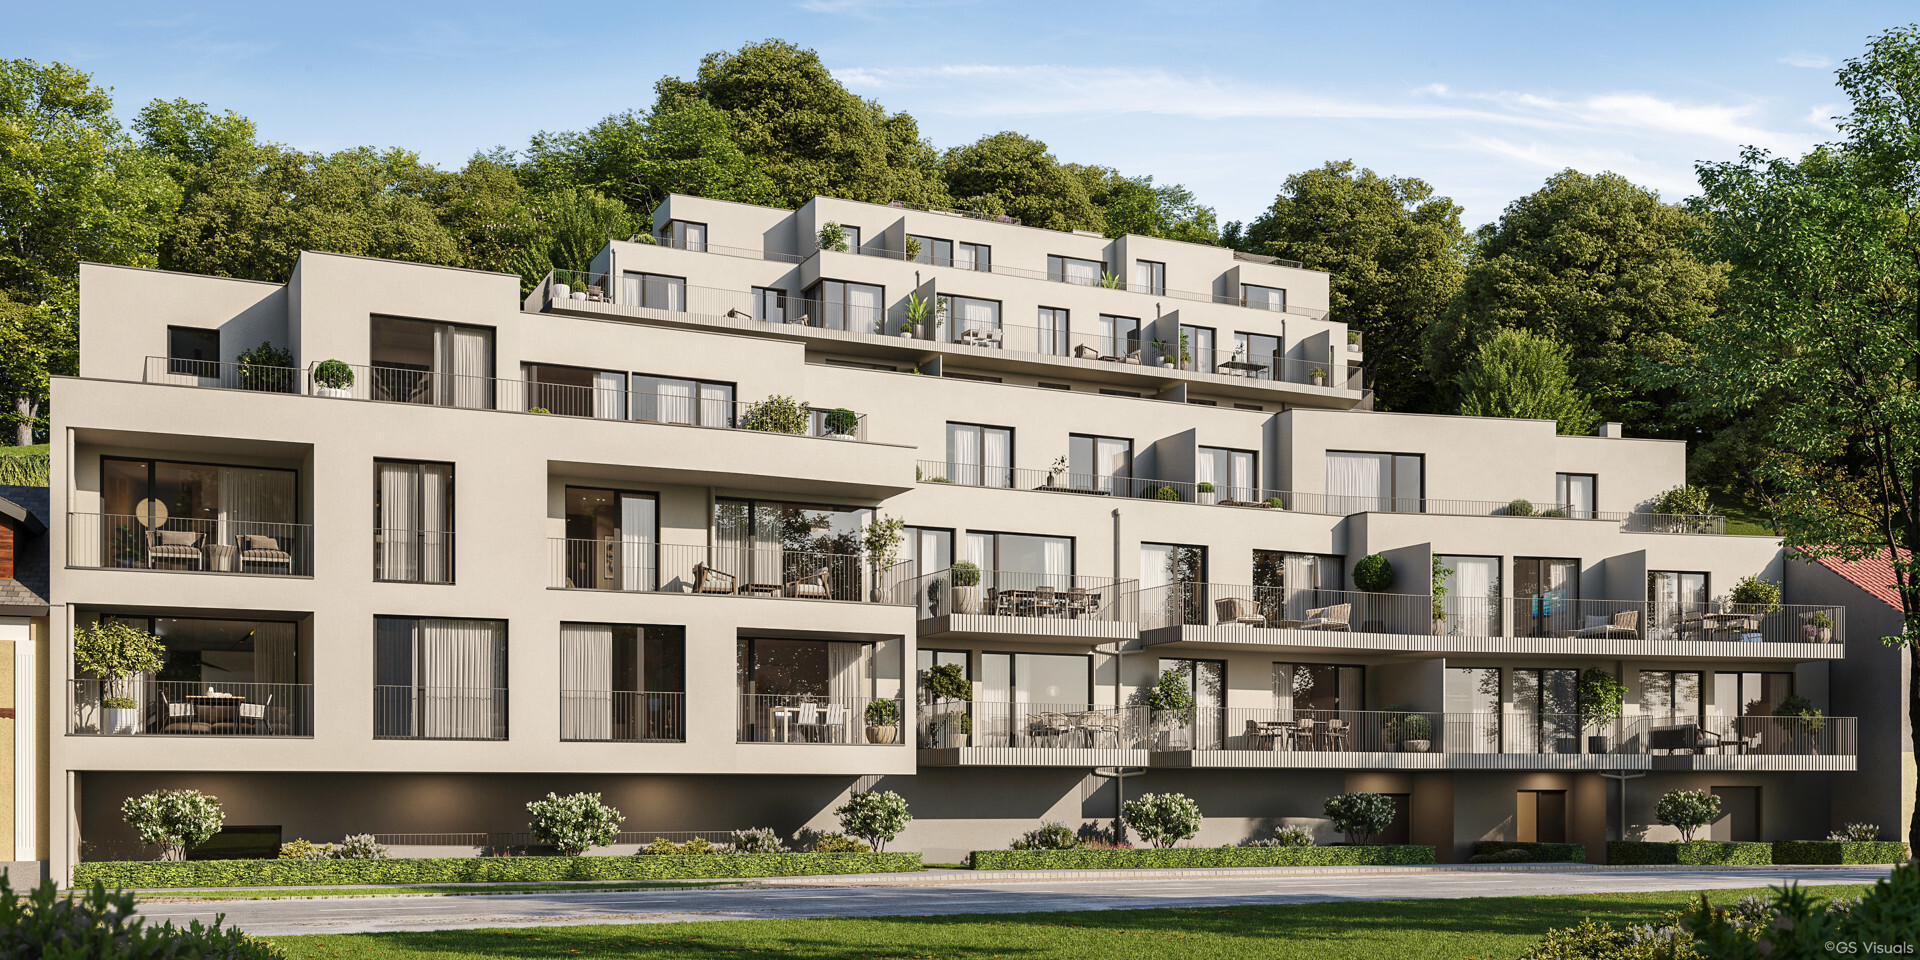 Südseitige Balkonwohnung in Grün-Ruhe-Lage - zu kaufen in 2391 Kaltenleutgeben